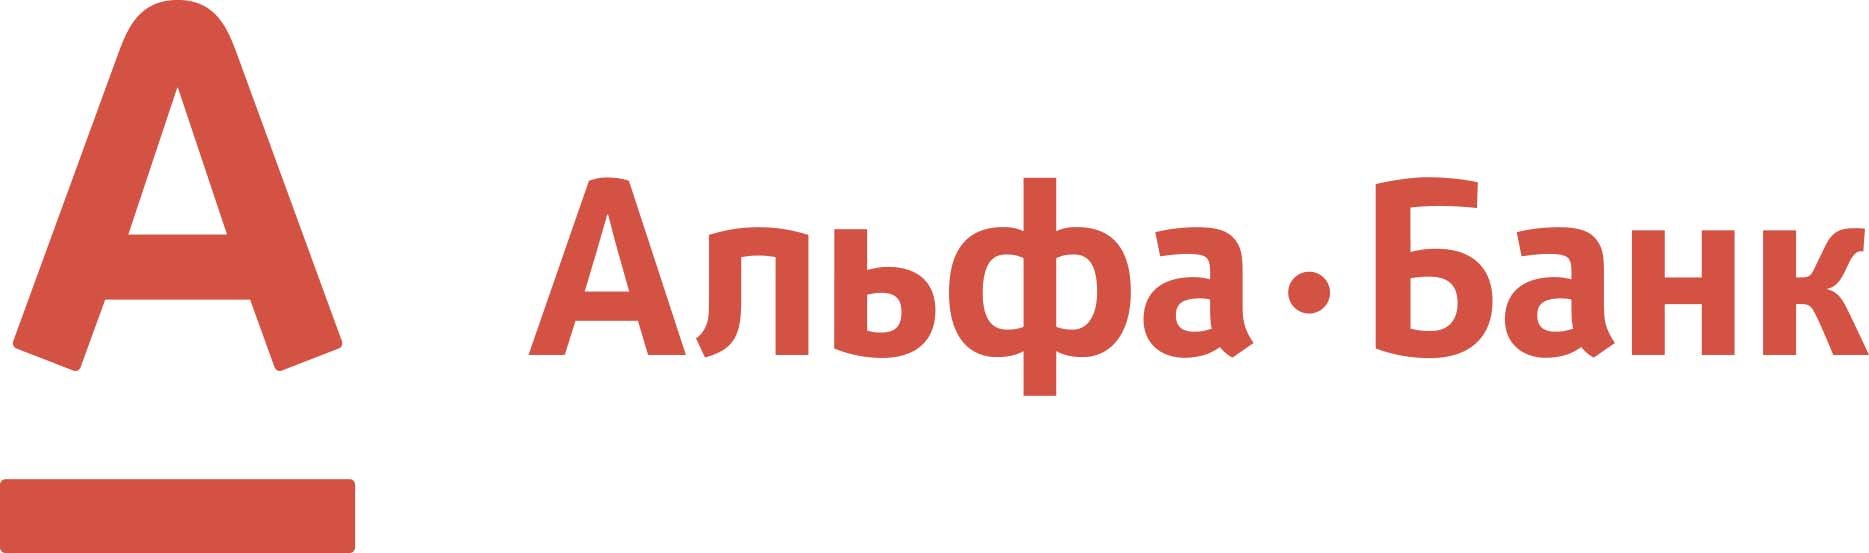 логотип Альфа-Банк